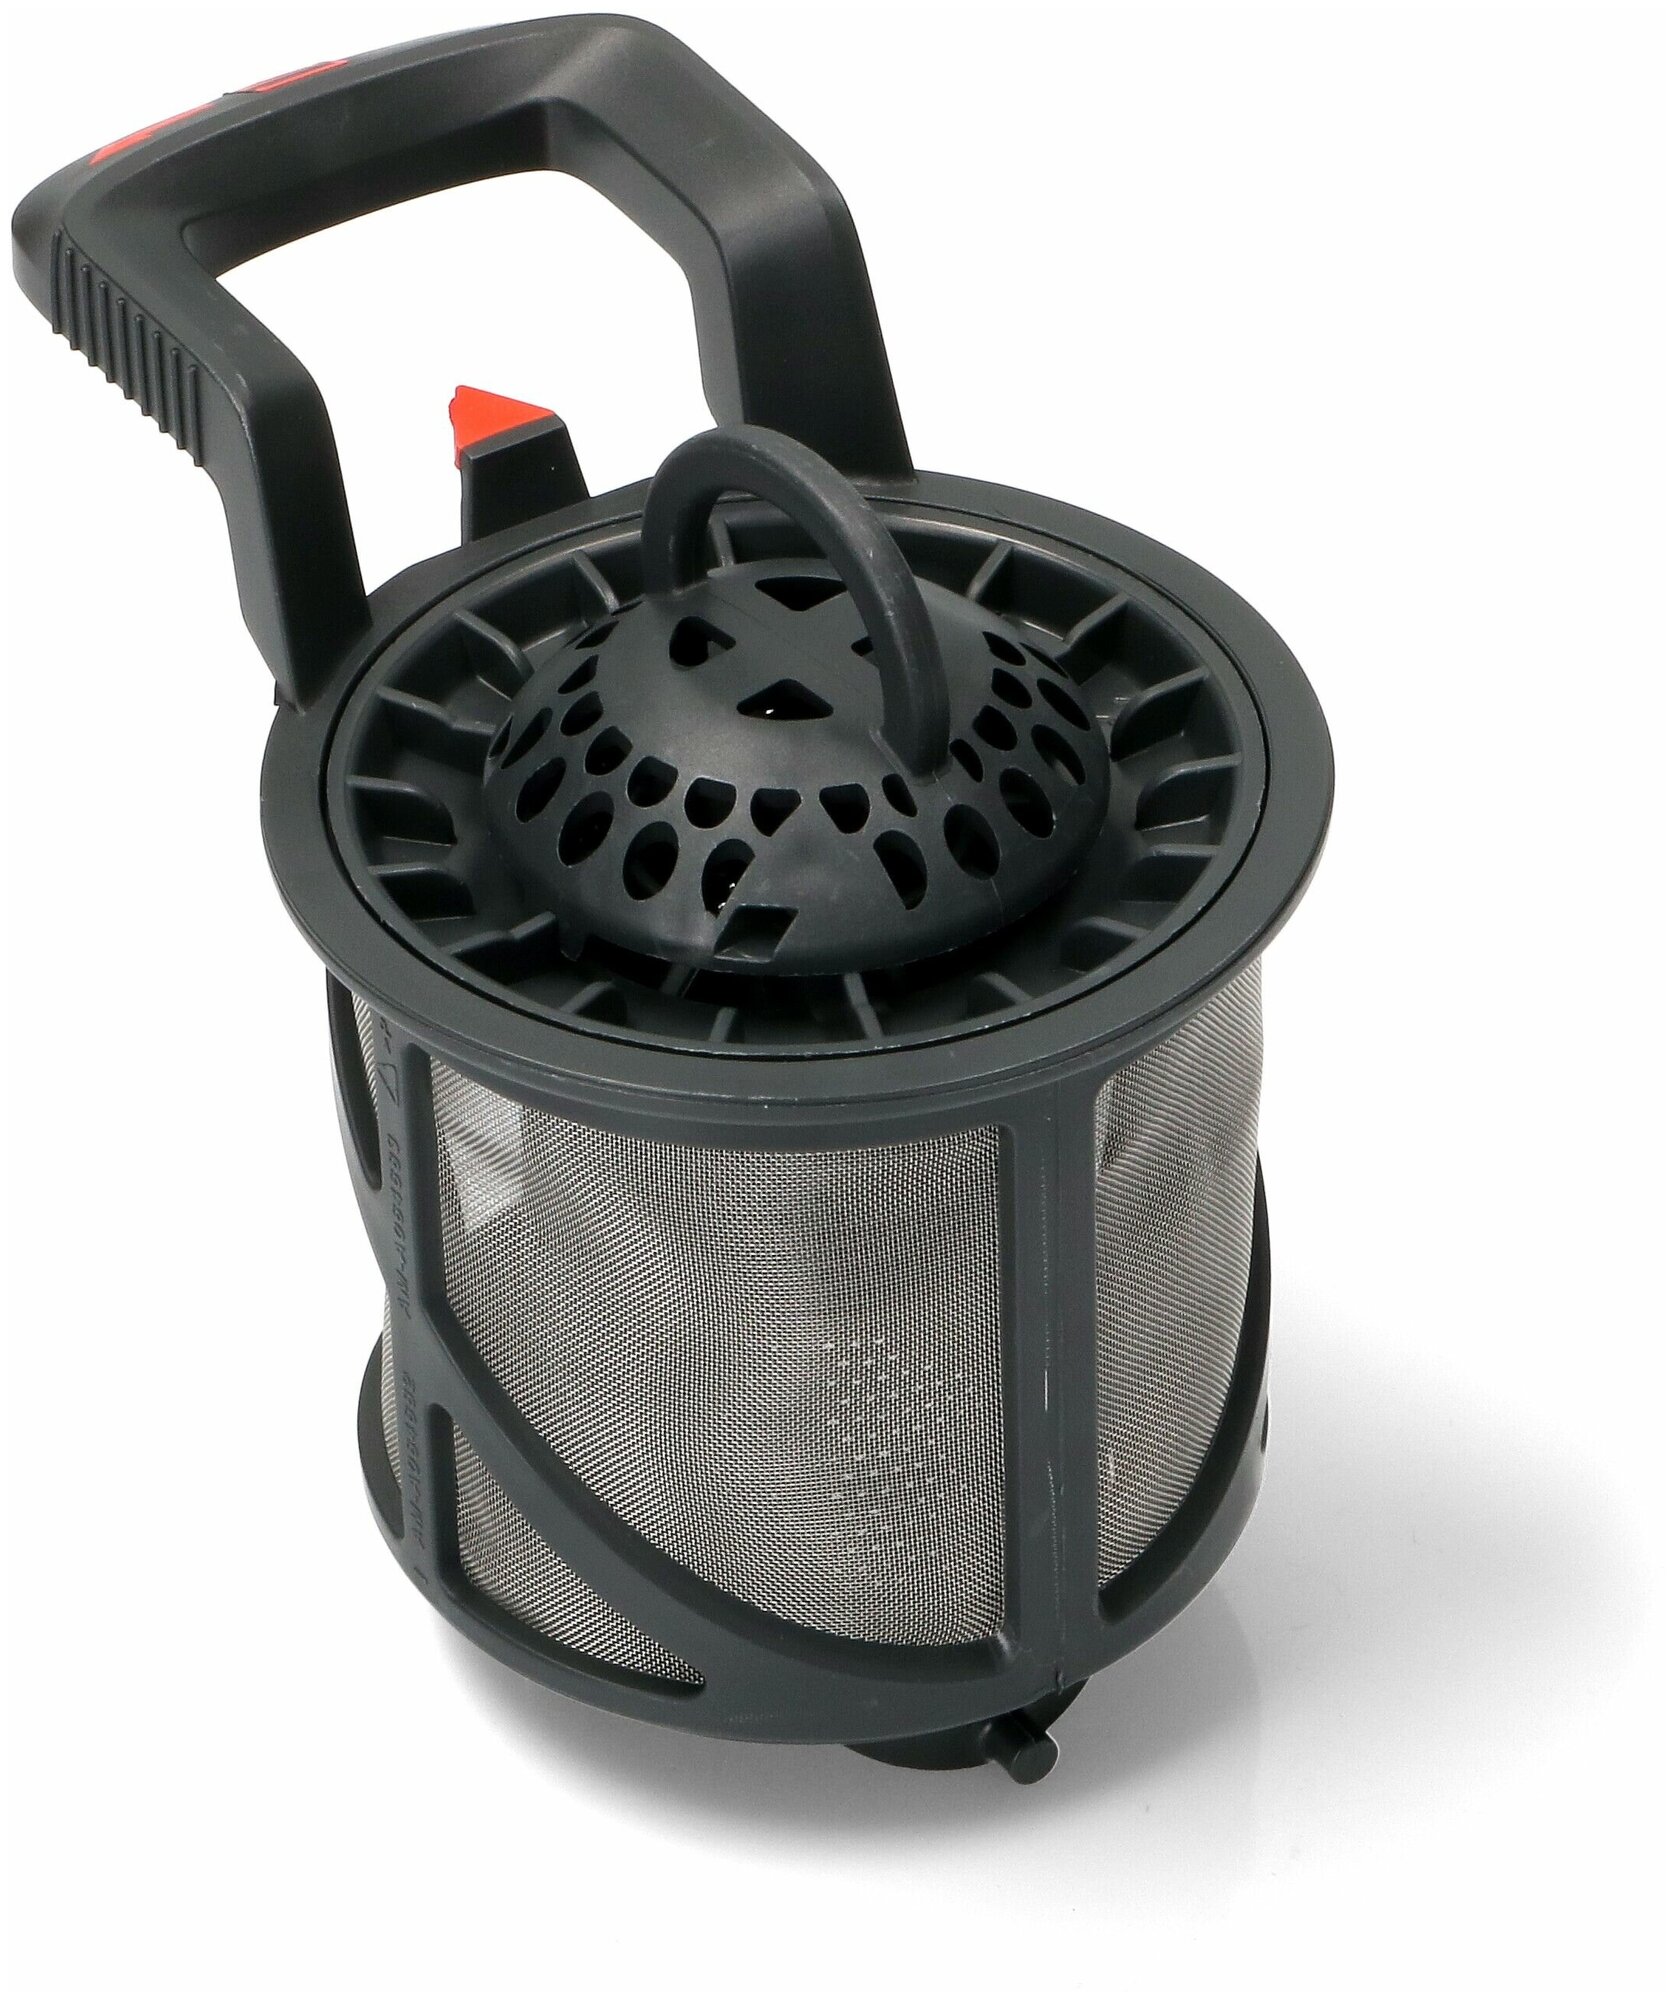 Фильтр сливной (сетчатый, микрофильтр) для посудомоечной машины Electrolux, Zanussi, AEG 140064682010